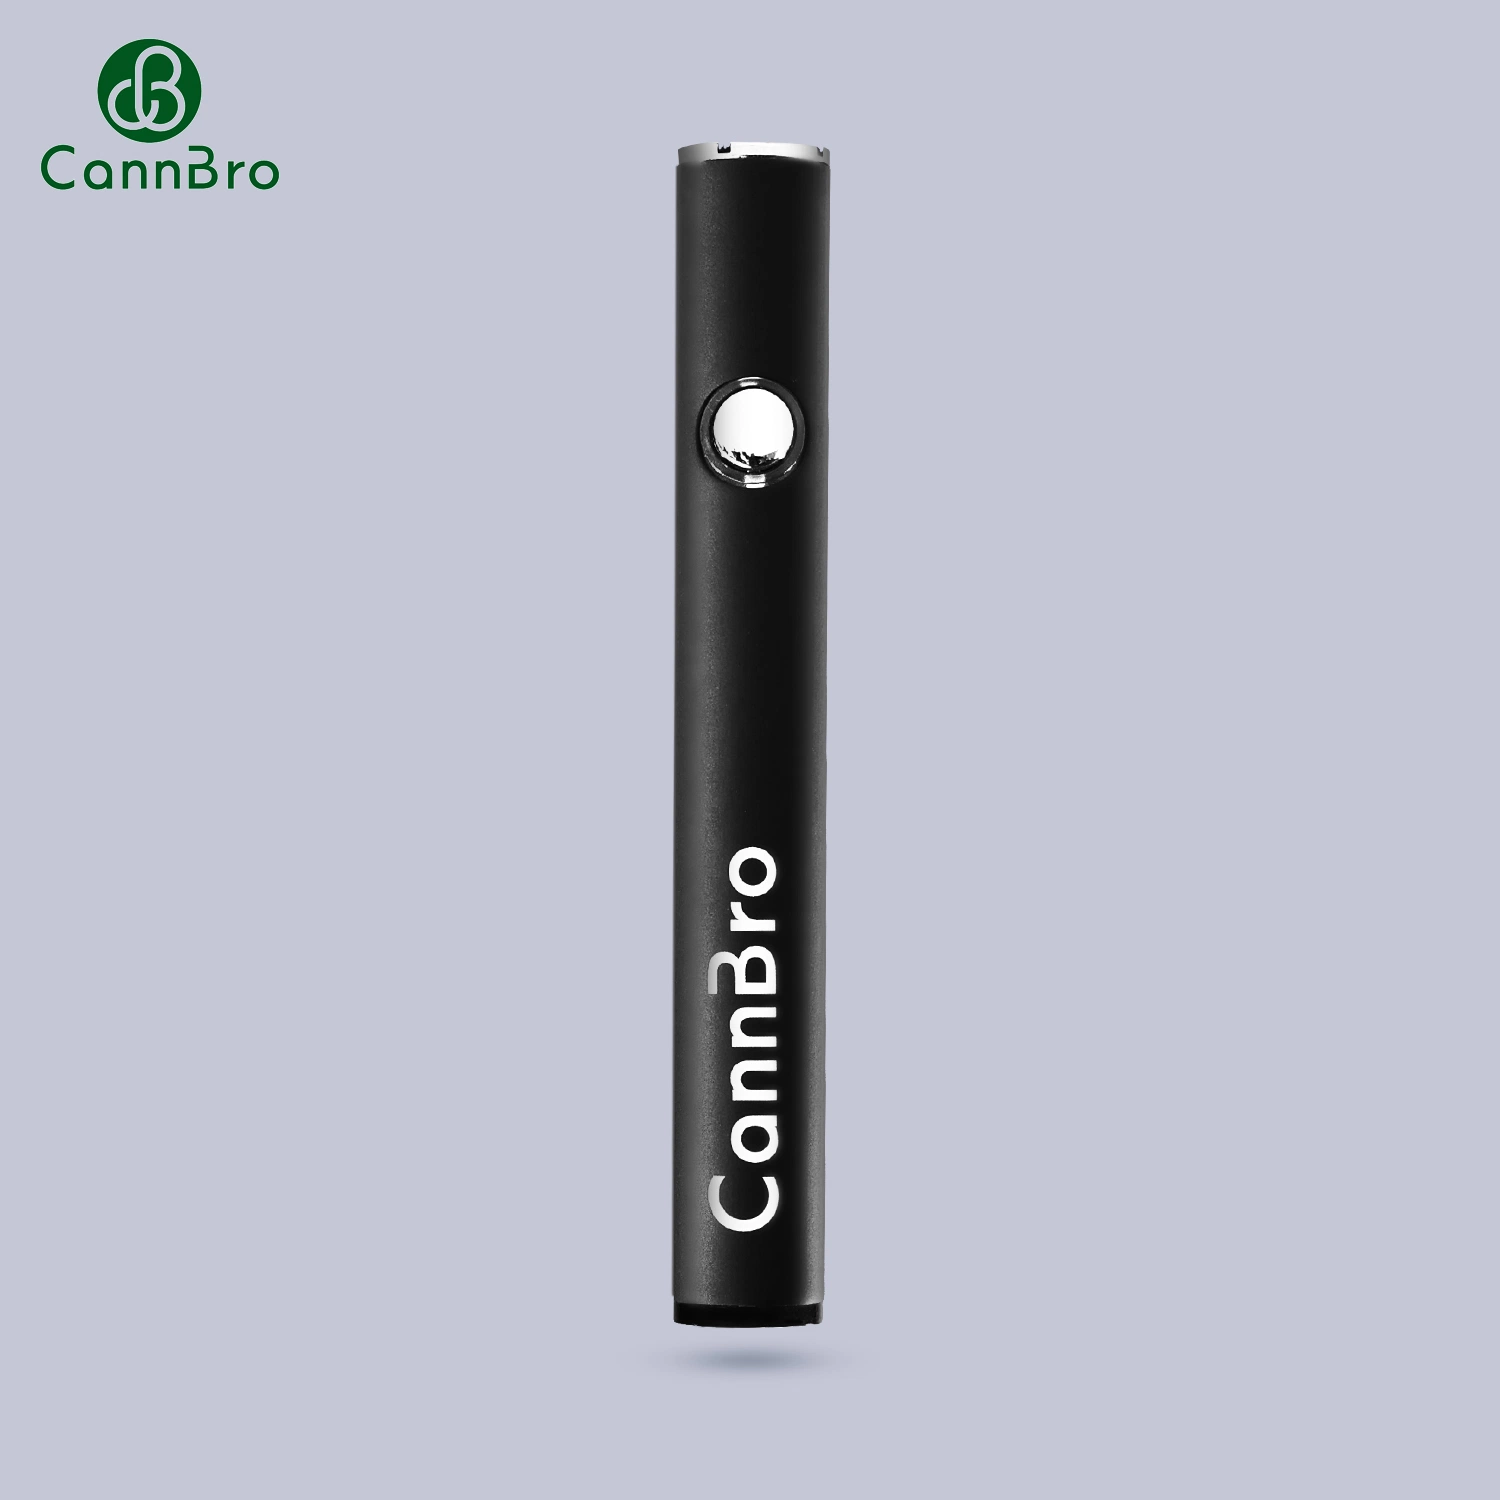 Vente en gros Vape jetable stylo vide cartouche Cannbro jetable E cigarette Batterie pour cigarettes électroniques Vape Mini Mod 290 mAh Vape Battery